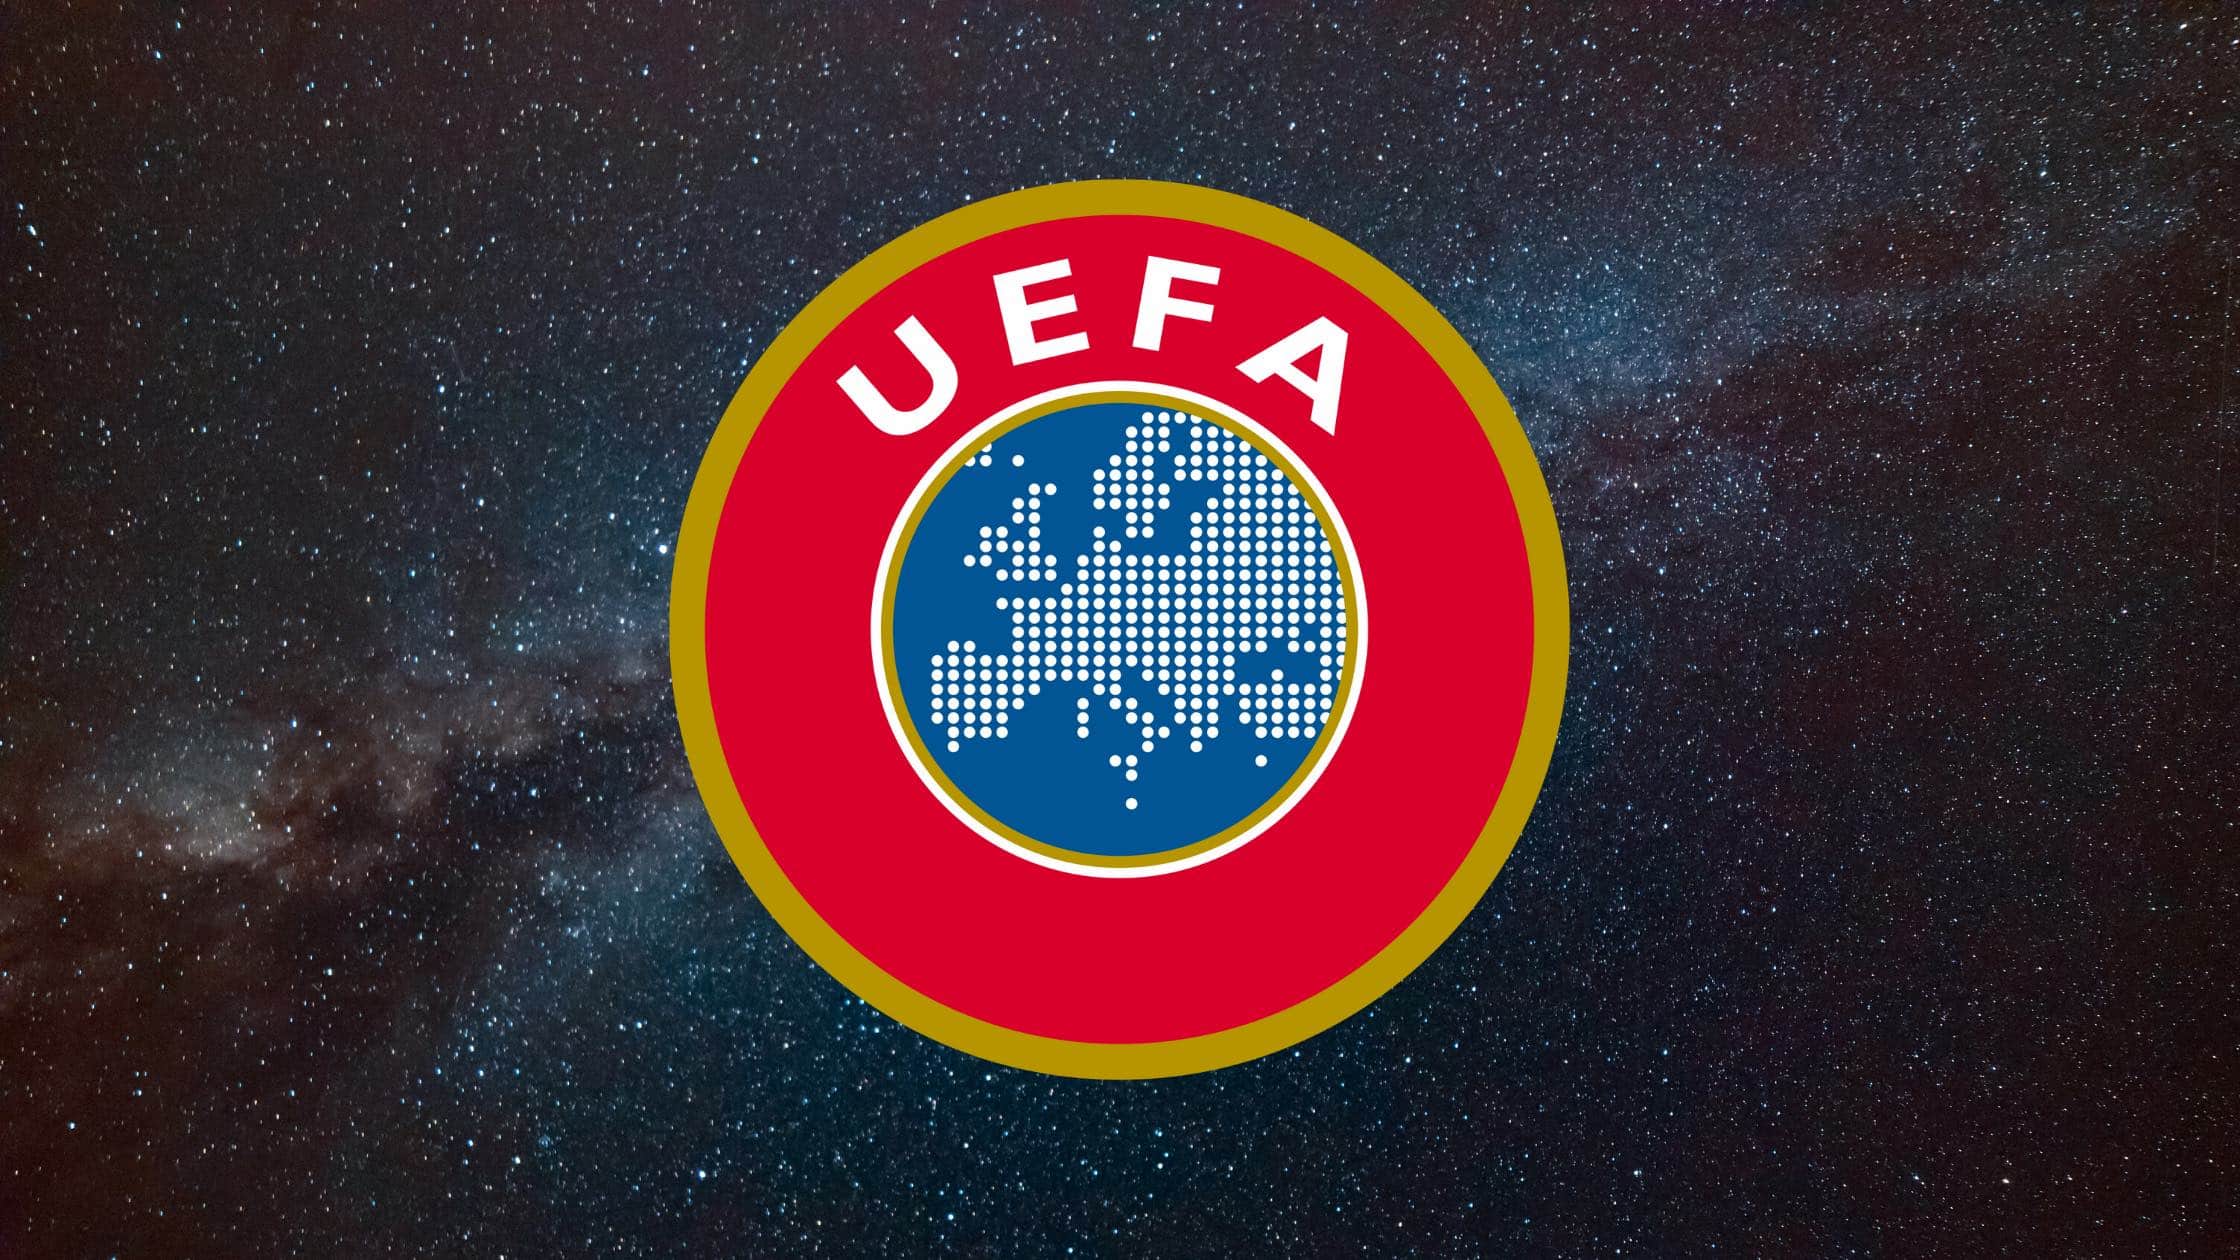 Die UEFA ist der Träger der Champions League, Europa League, Europa Conference League, Youth League und Europameisterschaft. Die UEFA hat sich gegen eine Superliga ausgesprochen.